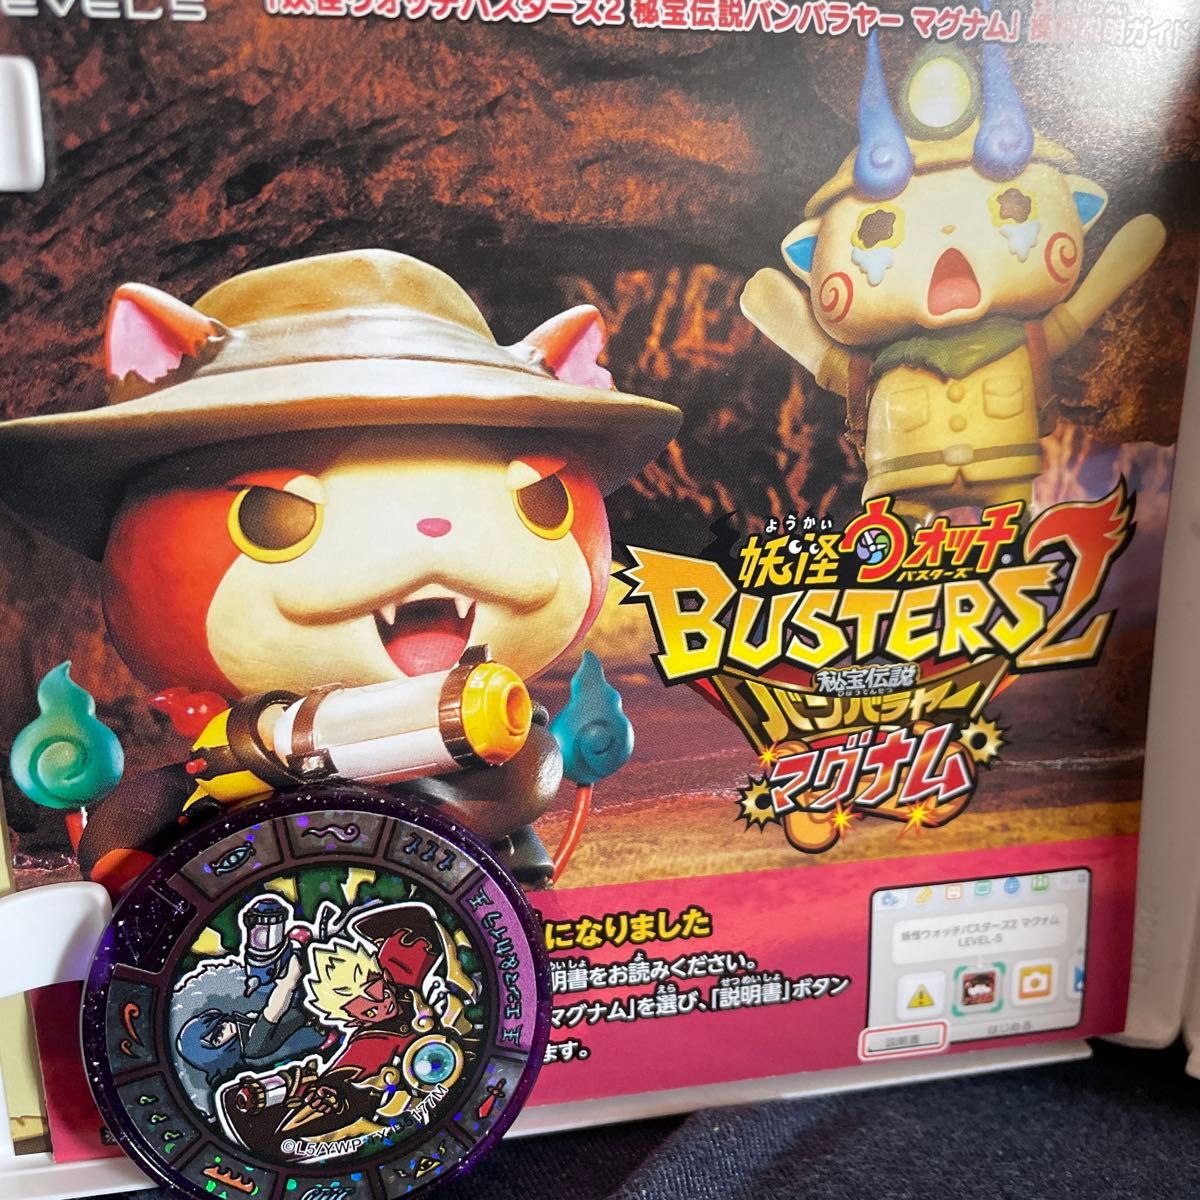 3DS 妖怪ウォッチバスターズ2秘宝伝説バンバラヤーマグナムメダル付き